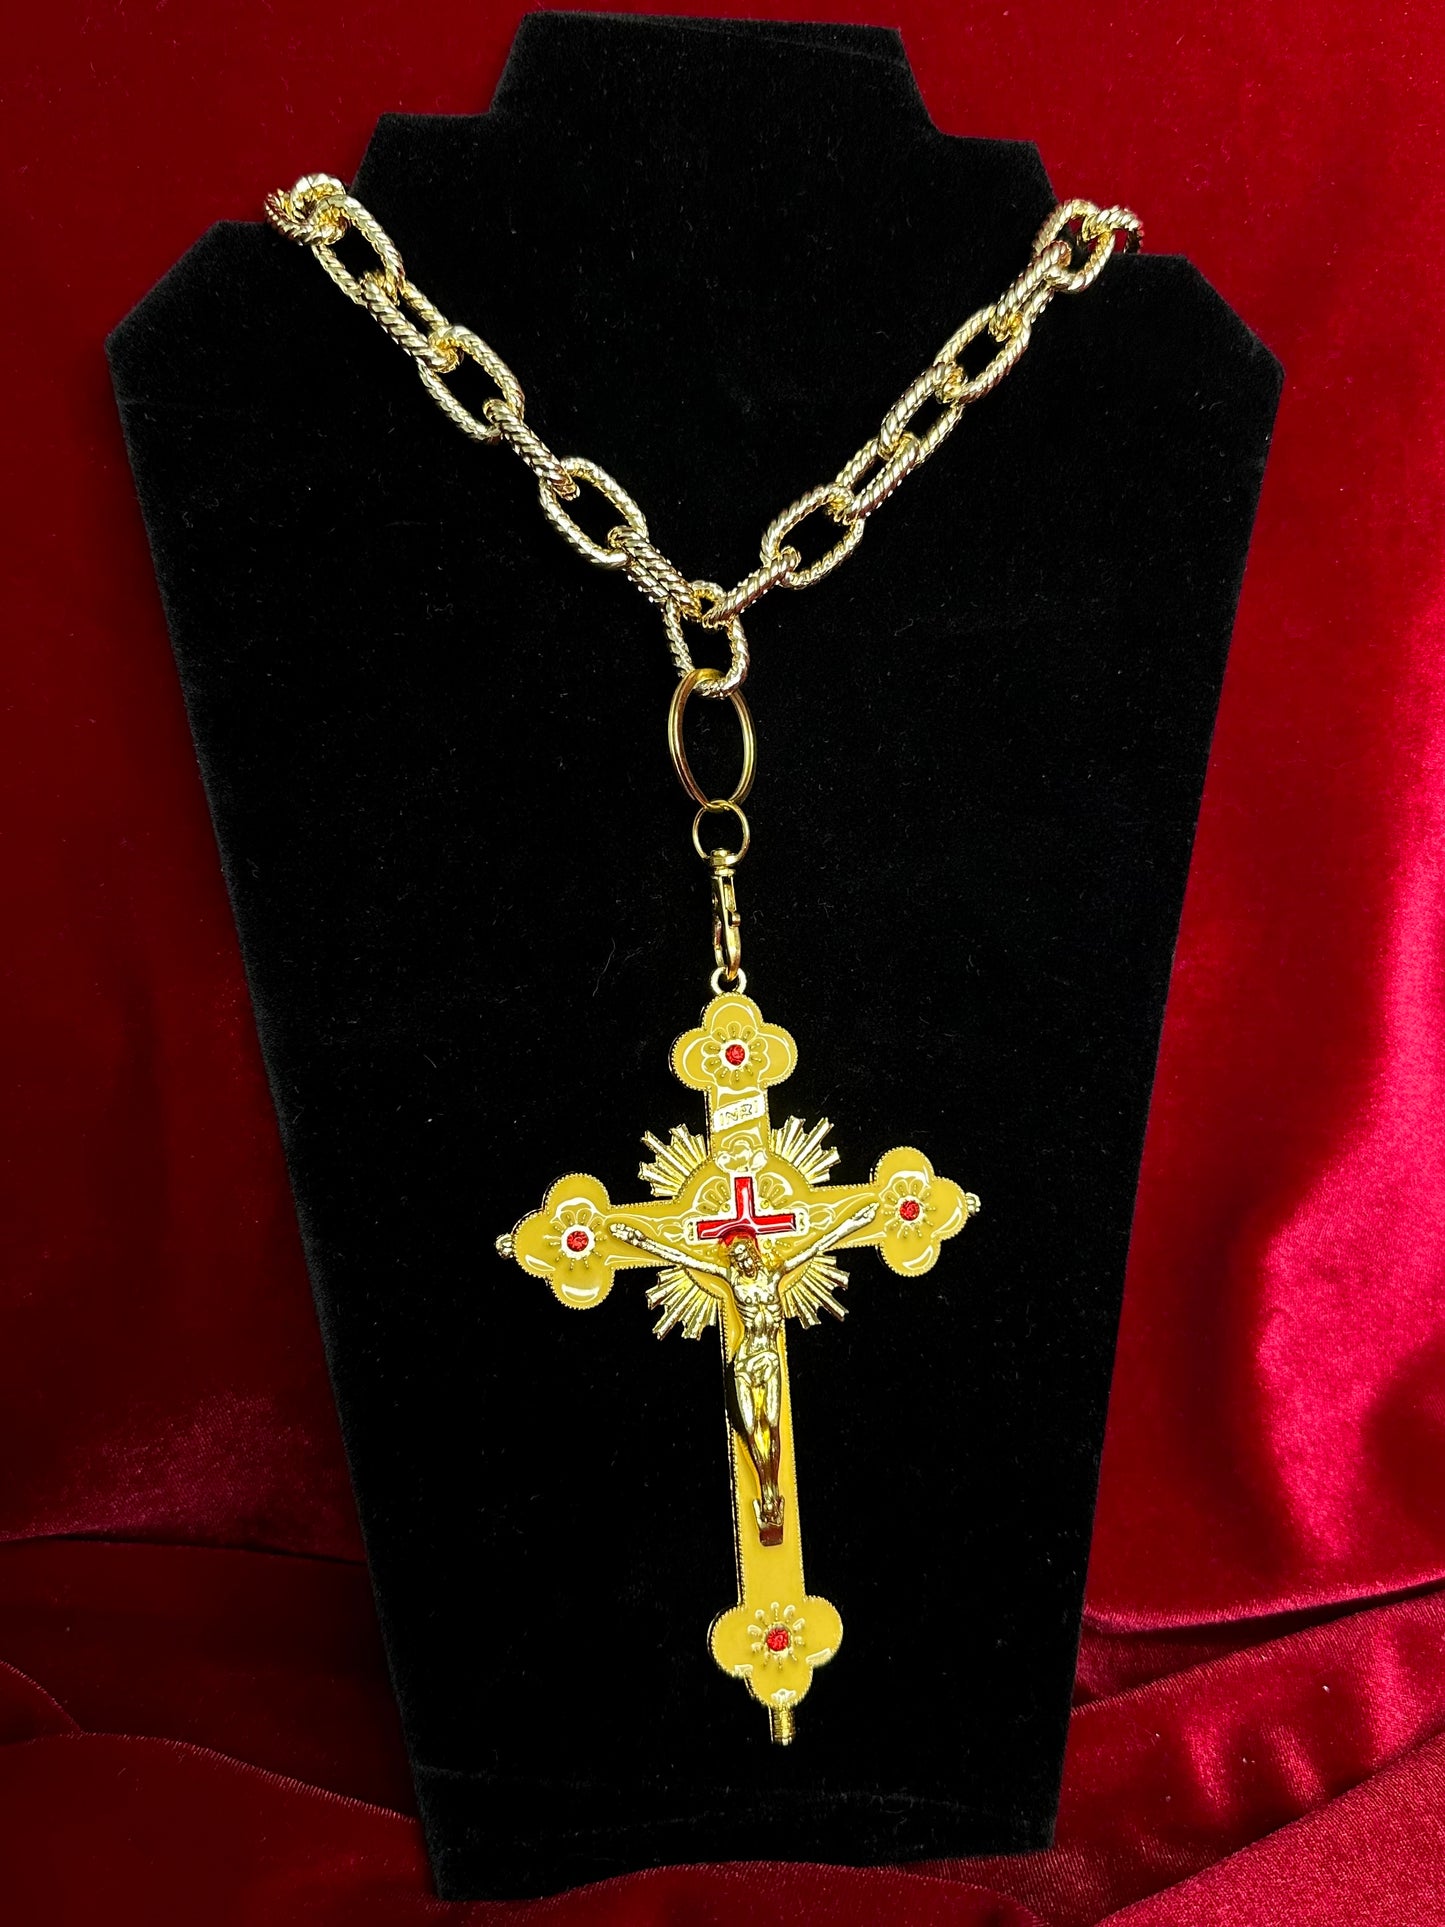 BLOOD OF CHRIST - Beige enamel necklace